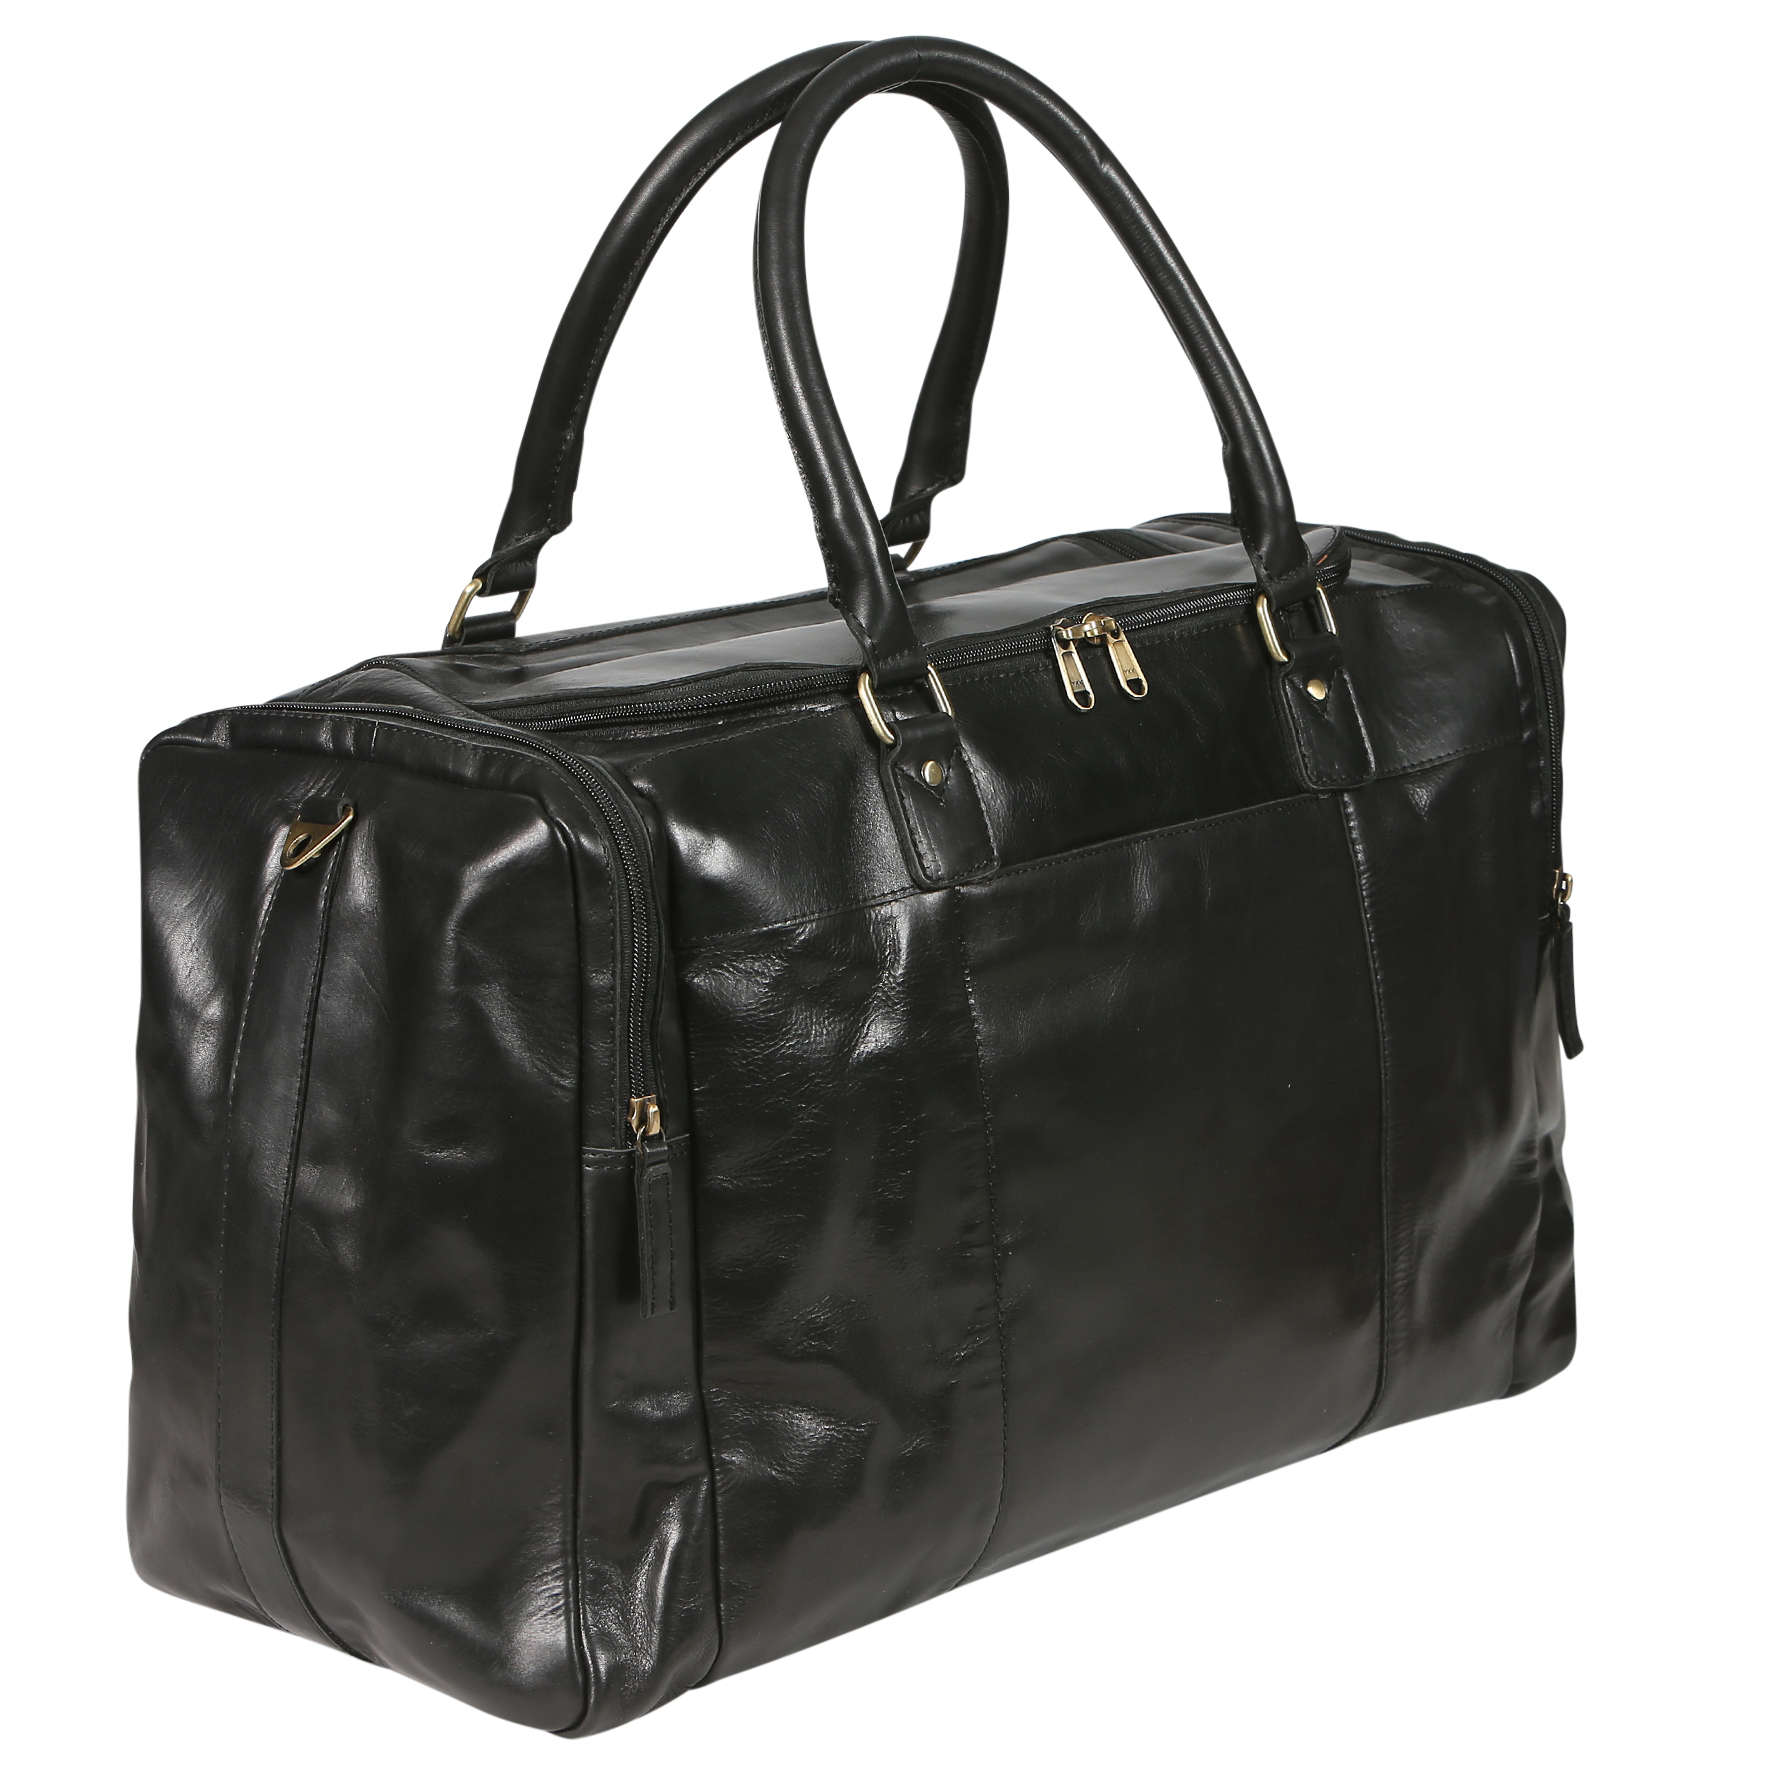 Mens Leather Travel Bag 3917 Black - Modapelle Direct